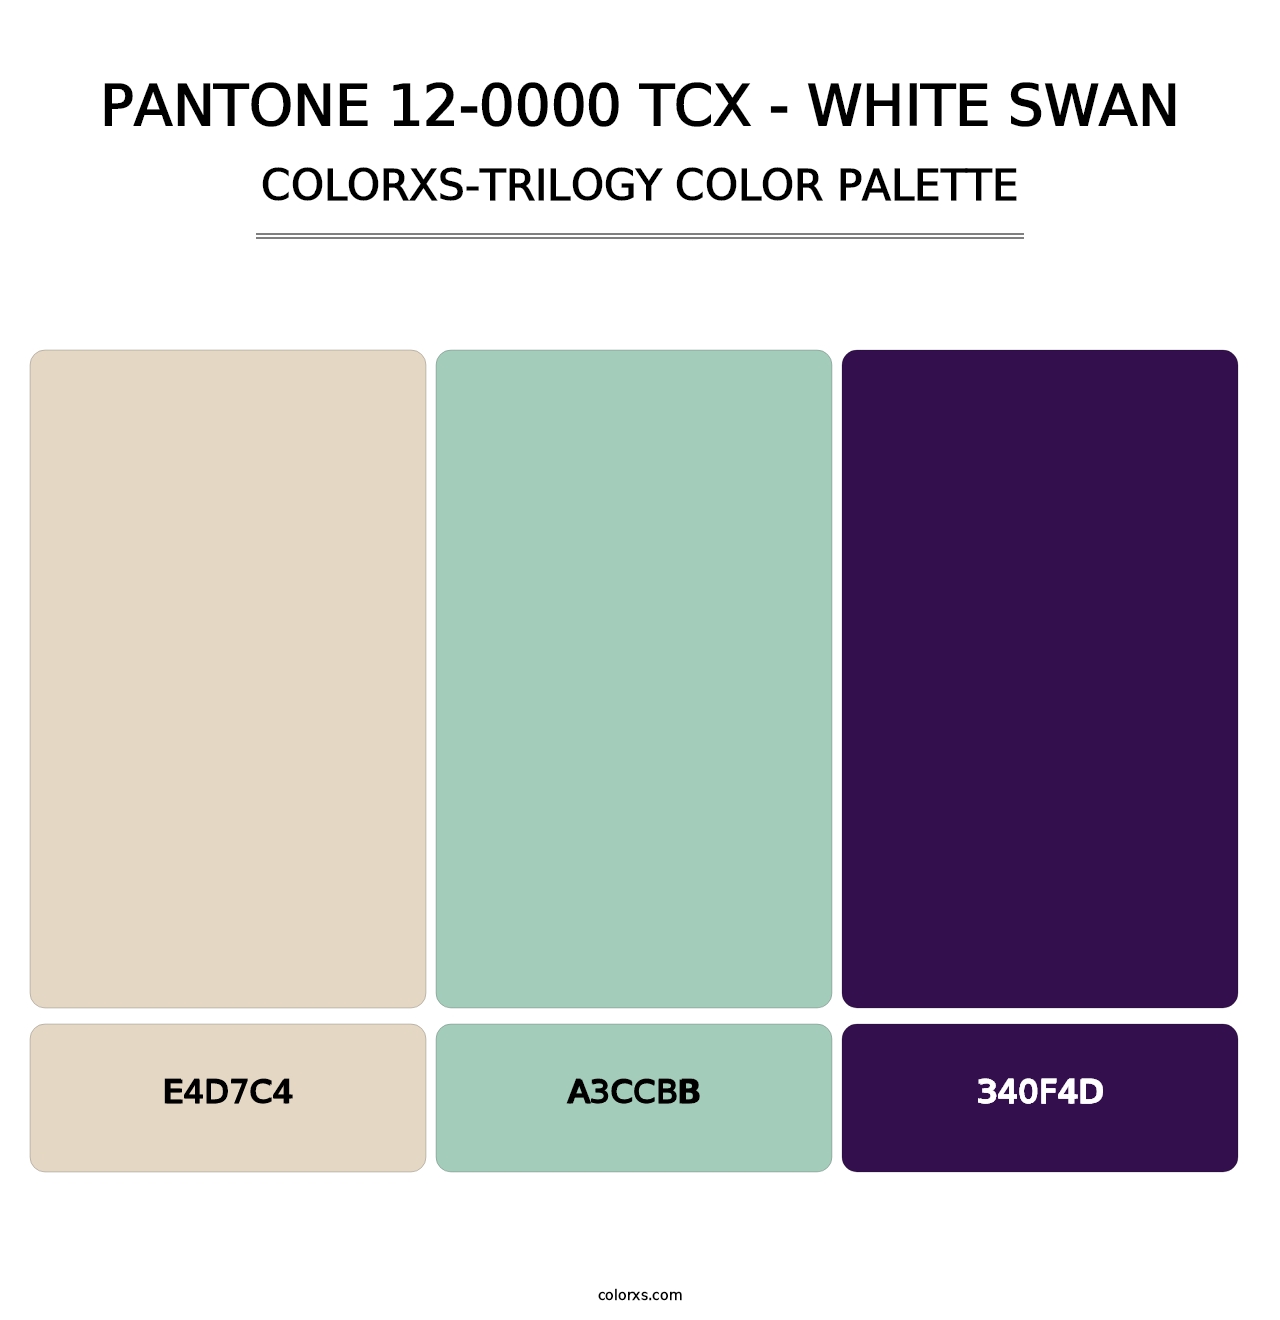 PANTONE 12-0000 TCX - White Swan - Colorxs Trilogy Palette